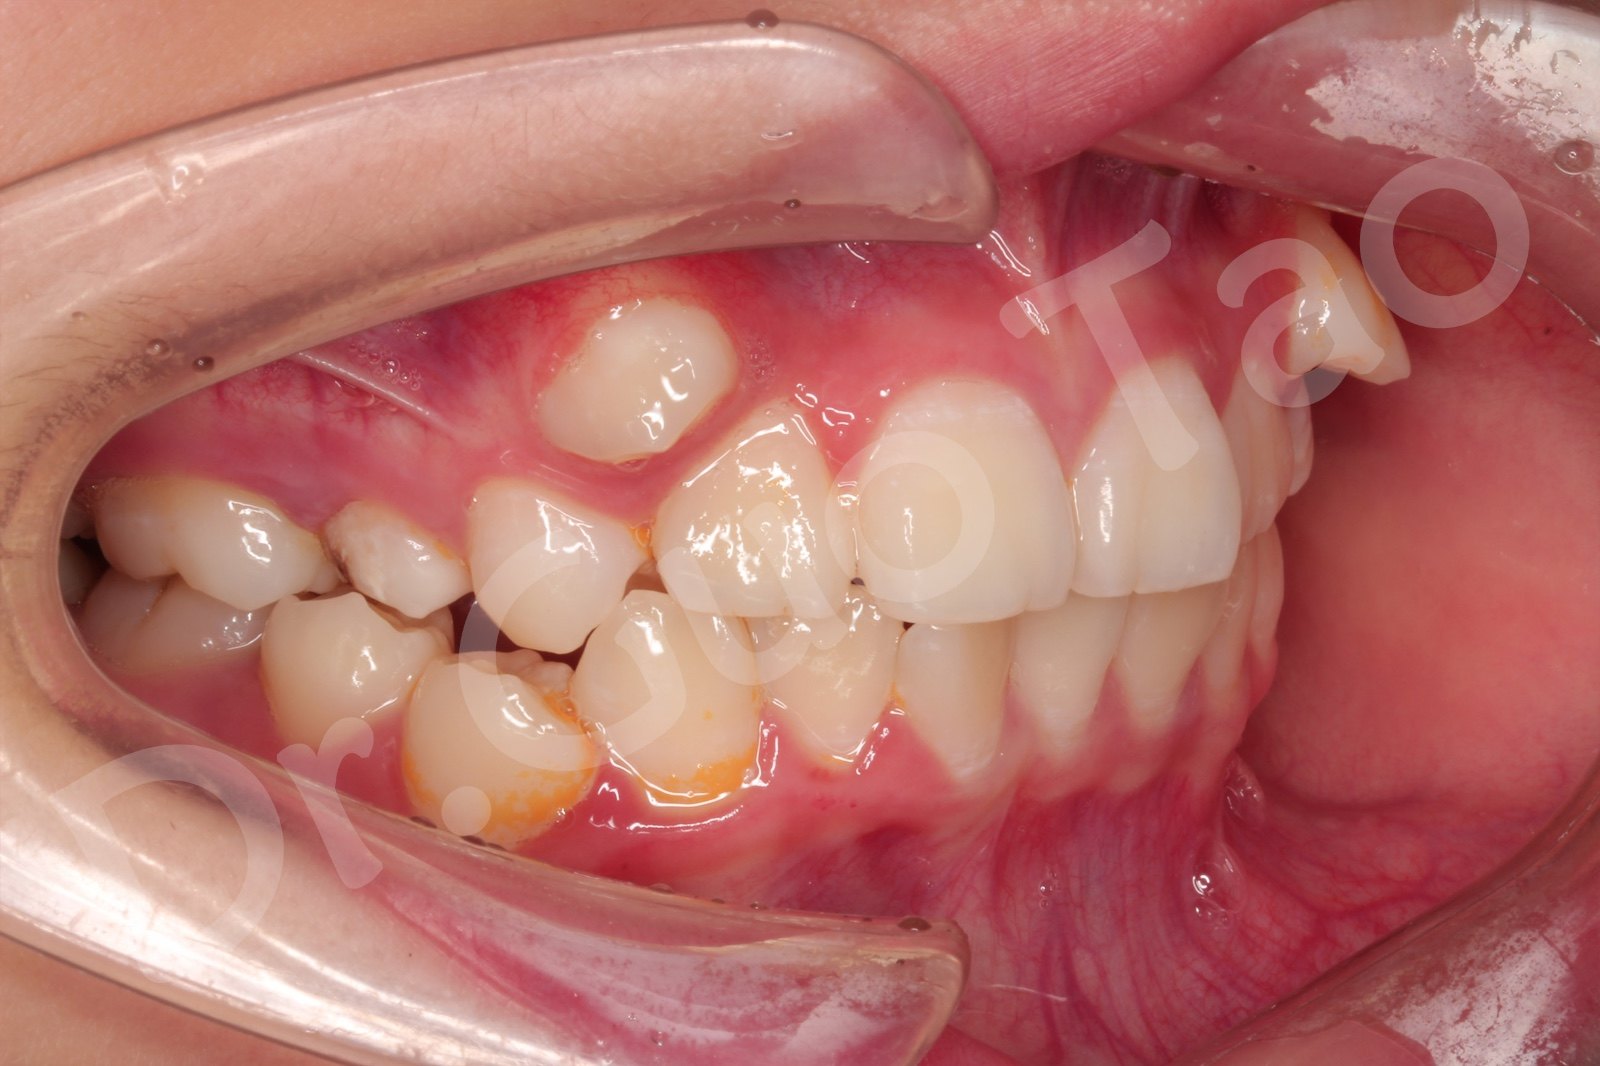 口内右侧照片,帮助医生判断右侧牙齿的错位情况以及咬合关系